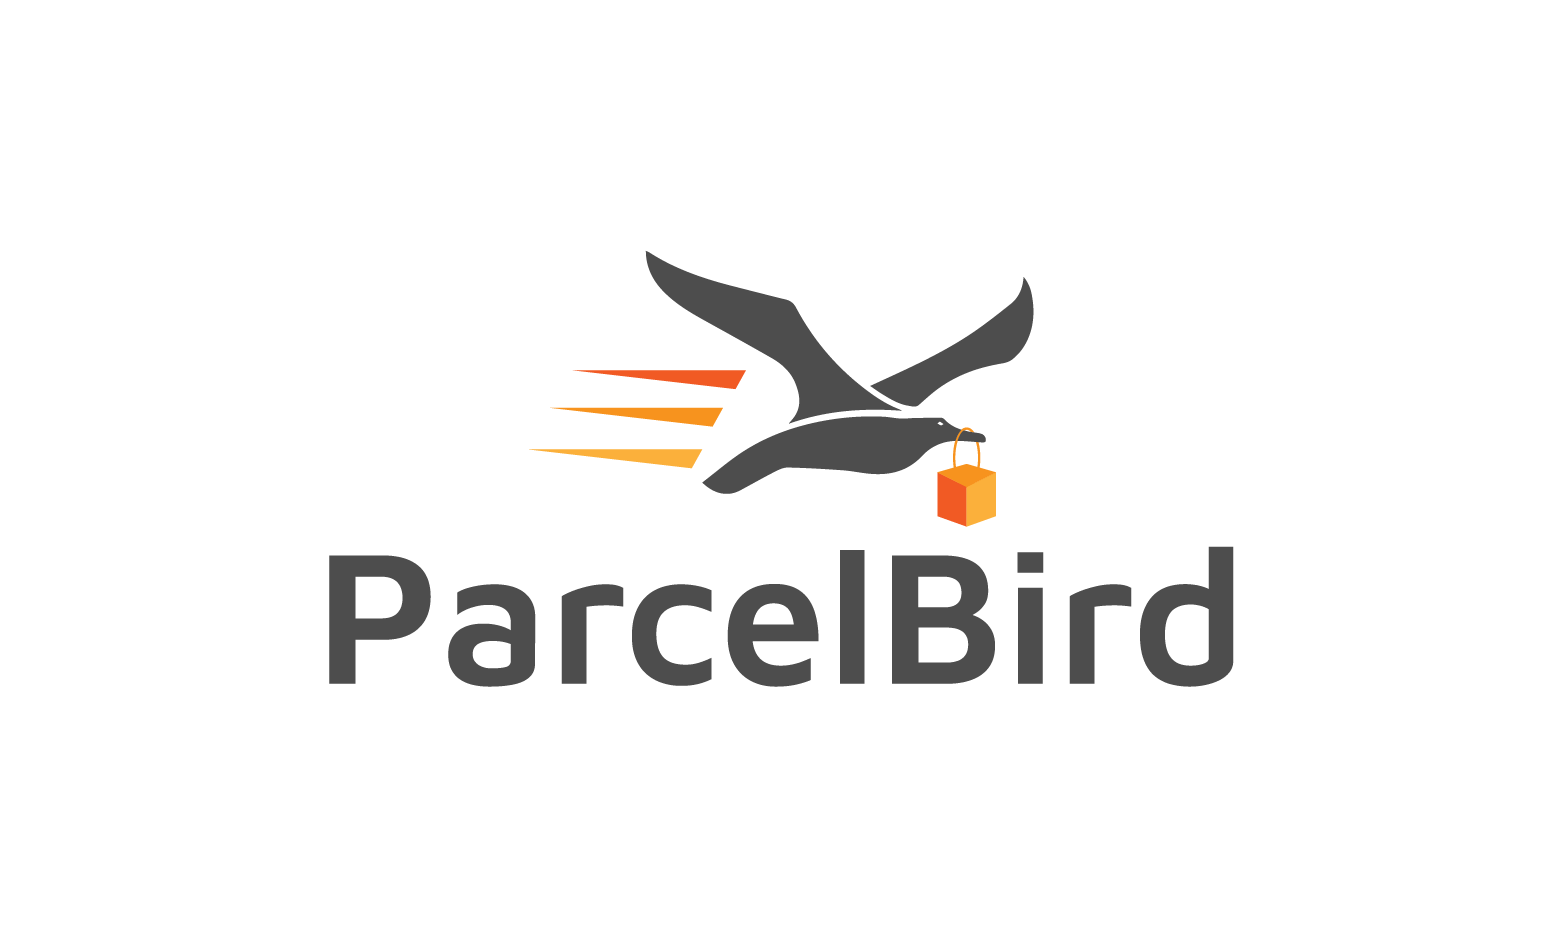 ParcelBird.com - Creative brandable domain for sale